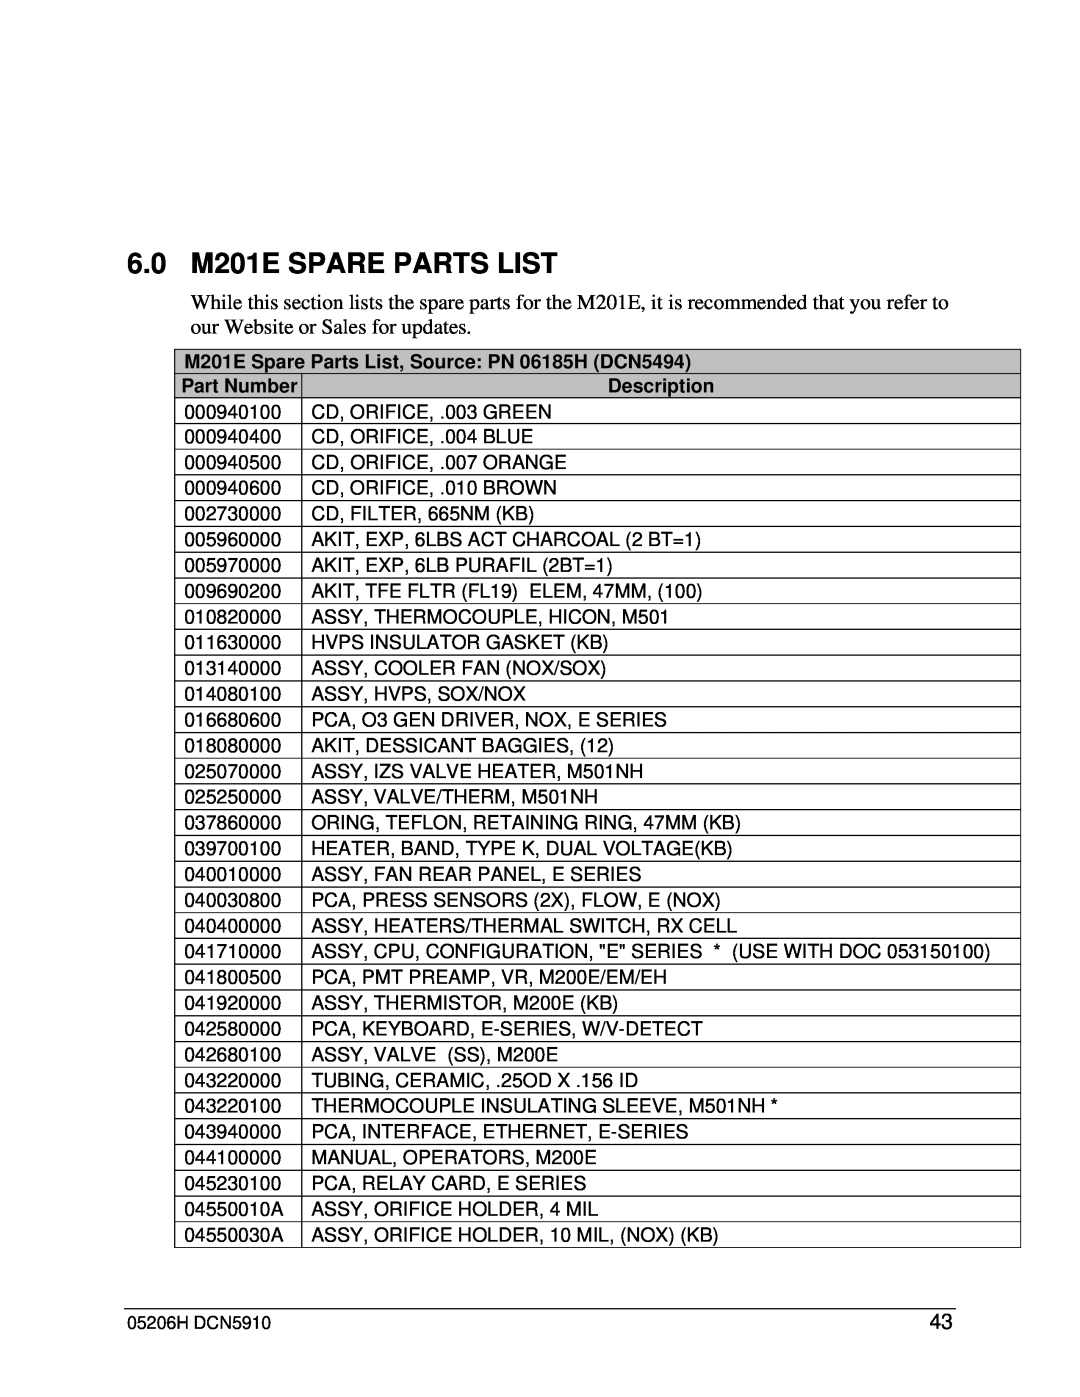 Teledyne manual 6.0 M201E SPARE PARTS LIST, M201E Spare Parts List, Source: PN 06185H DCN5494, Part Number, Description 